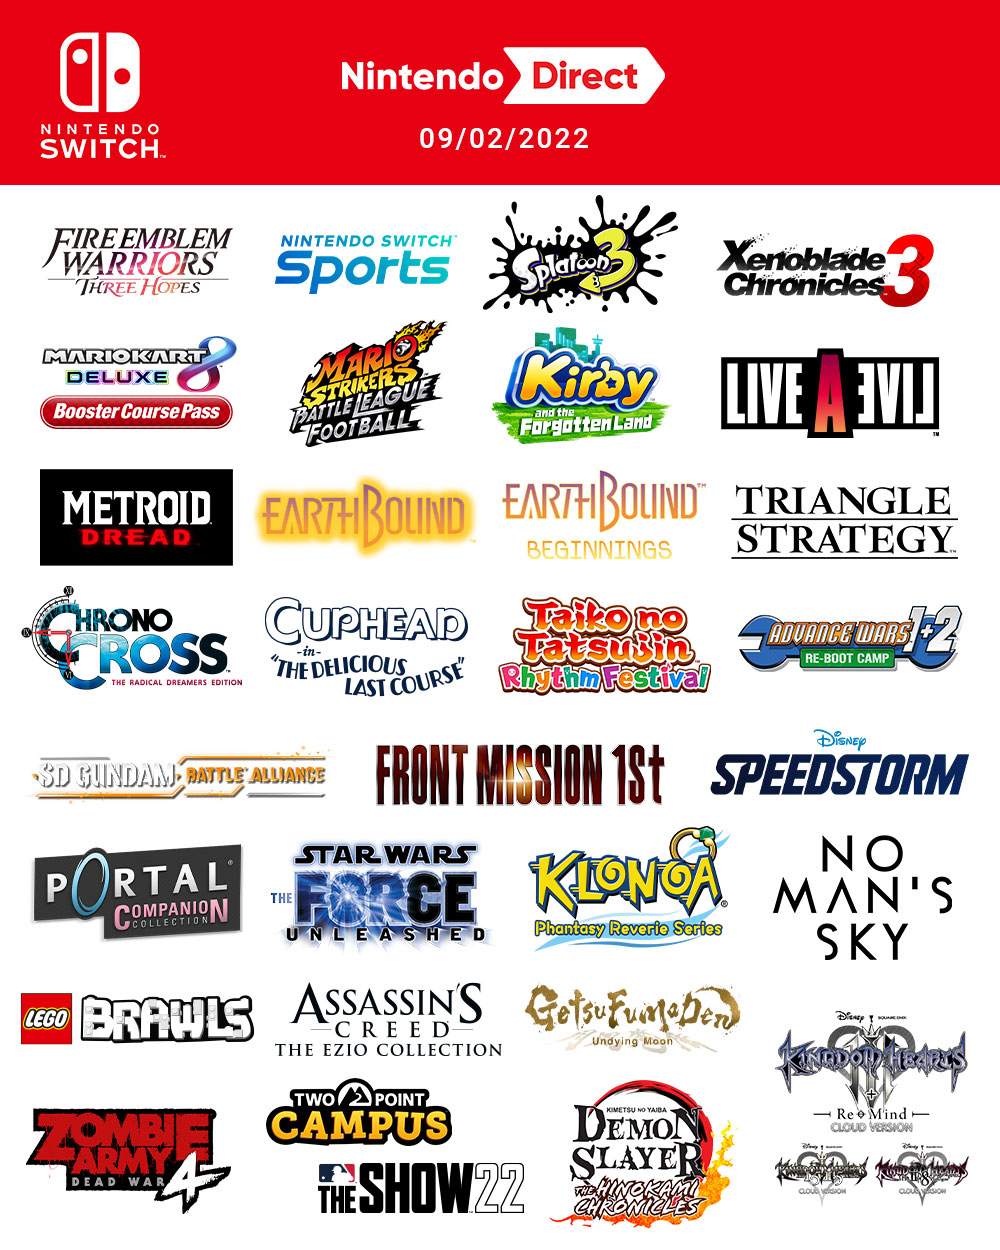 Nintendo Direct – 04.17.2013 Summary